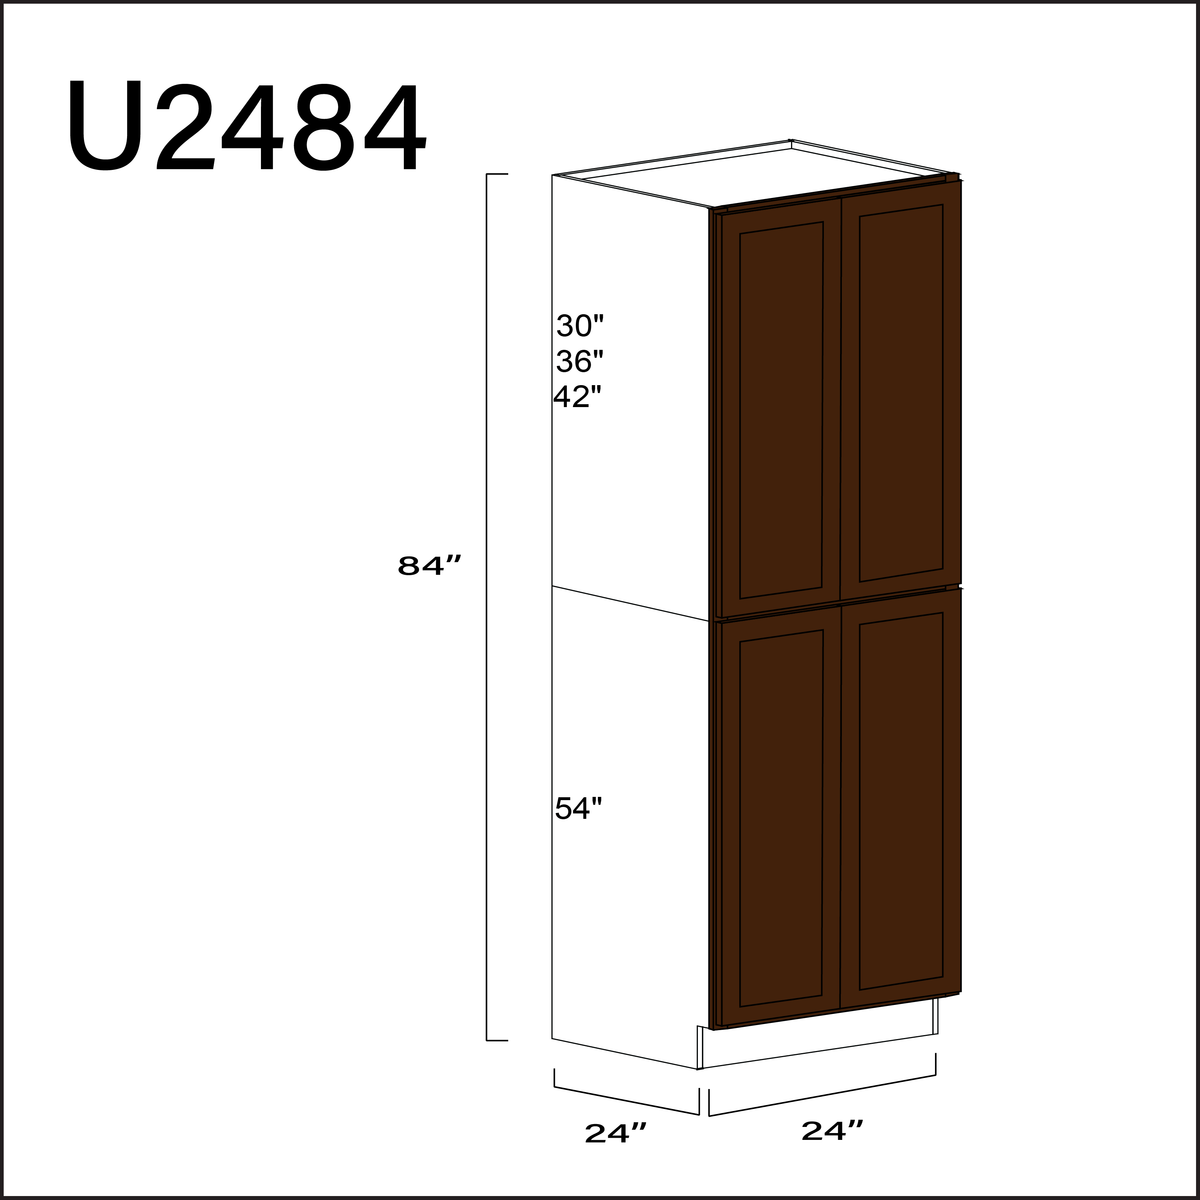 Espresso Shaker Double Door Pantry Cabinet - 24" W x 84" H x 24" D